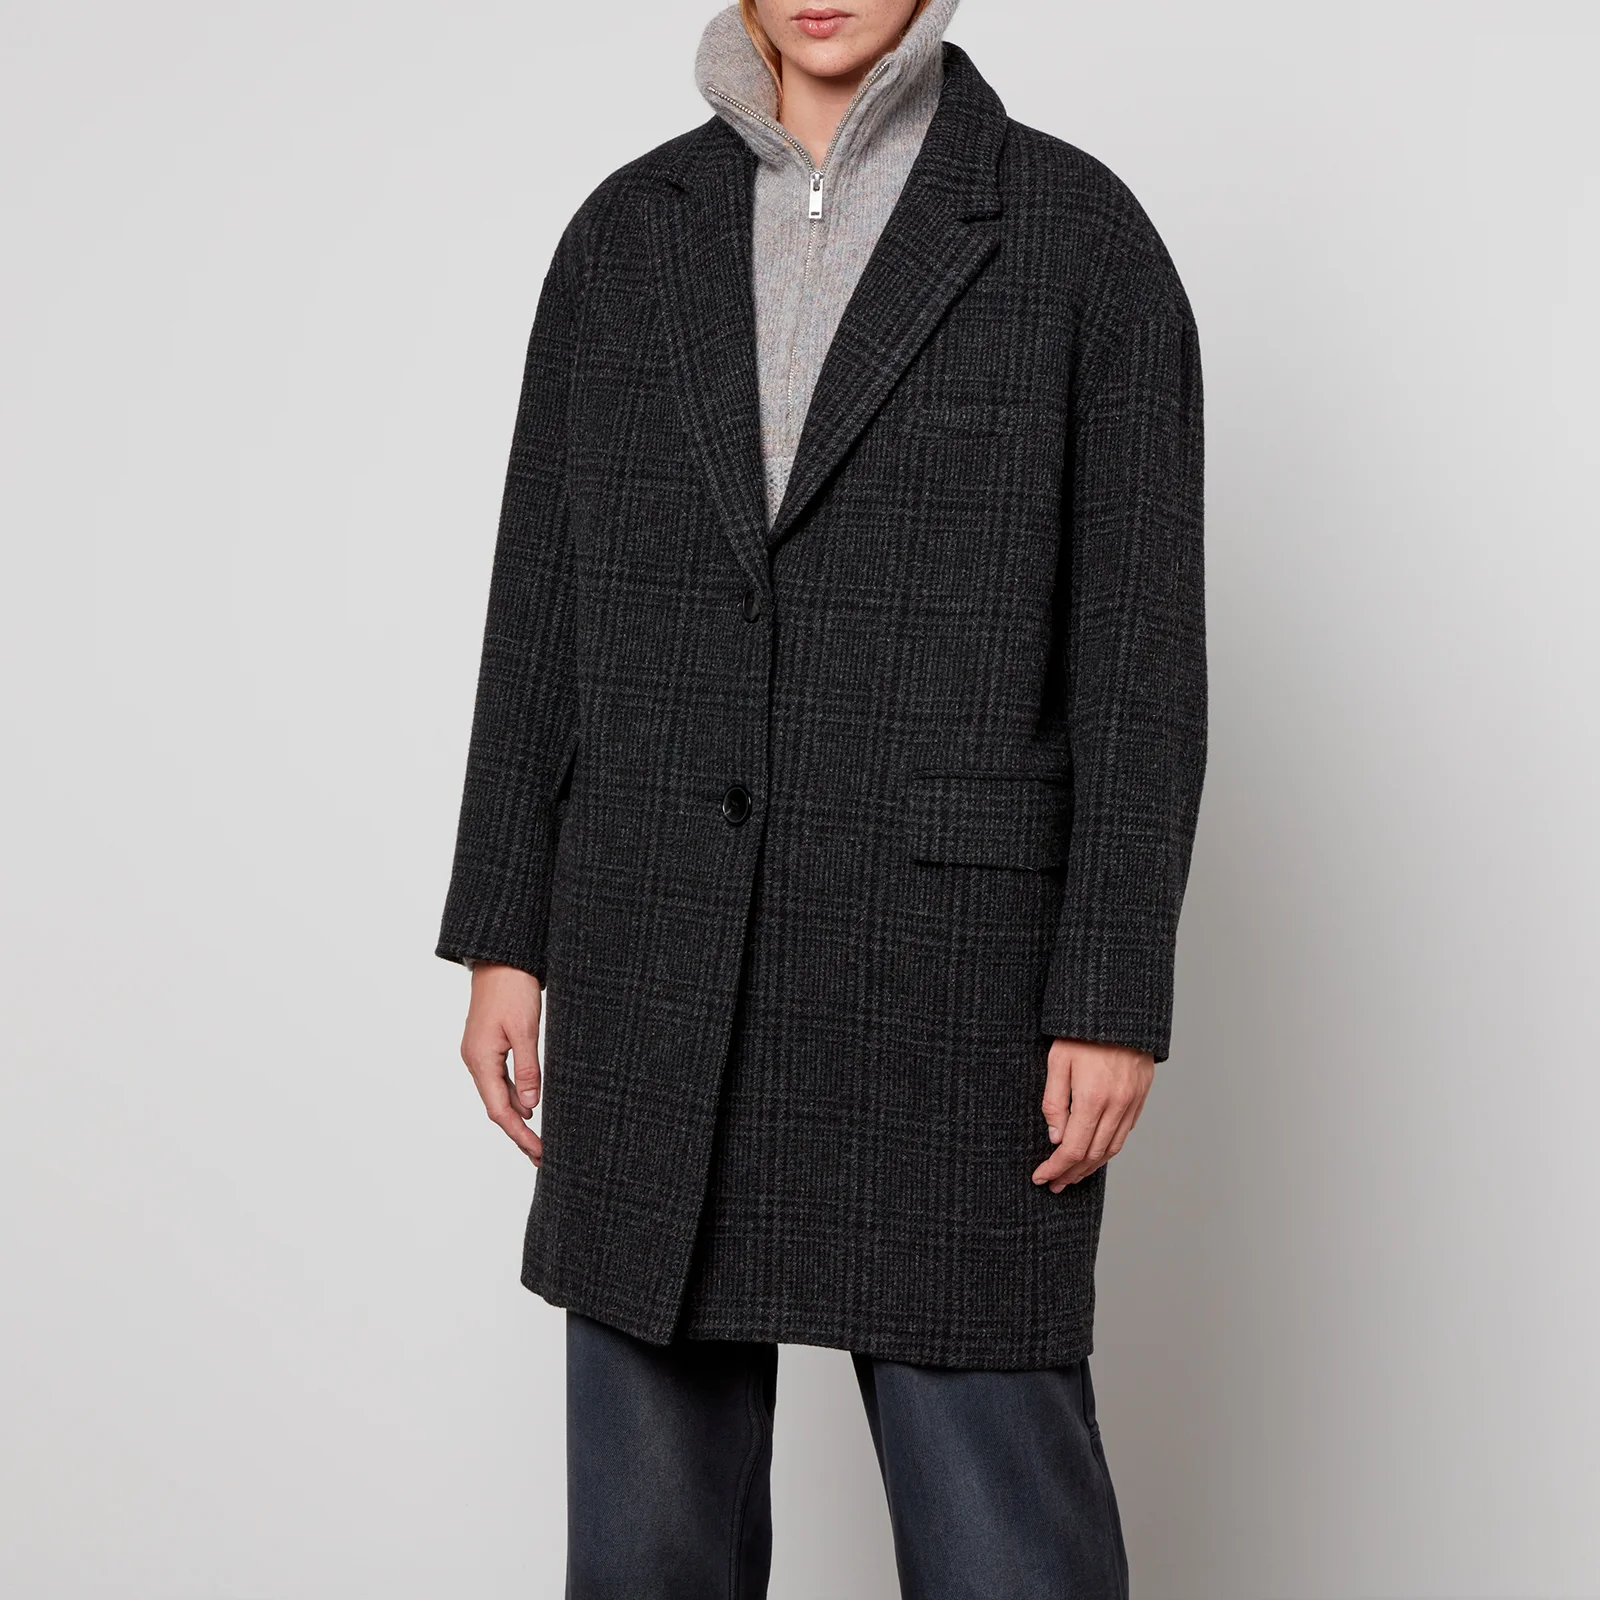 Marant Etoile Limiza Oversized Checked Wool Coat Image 1